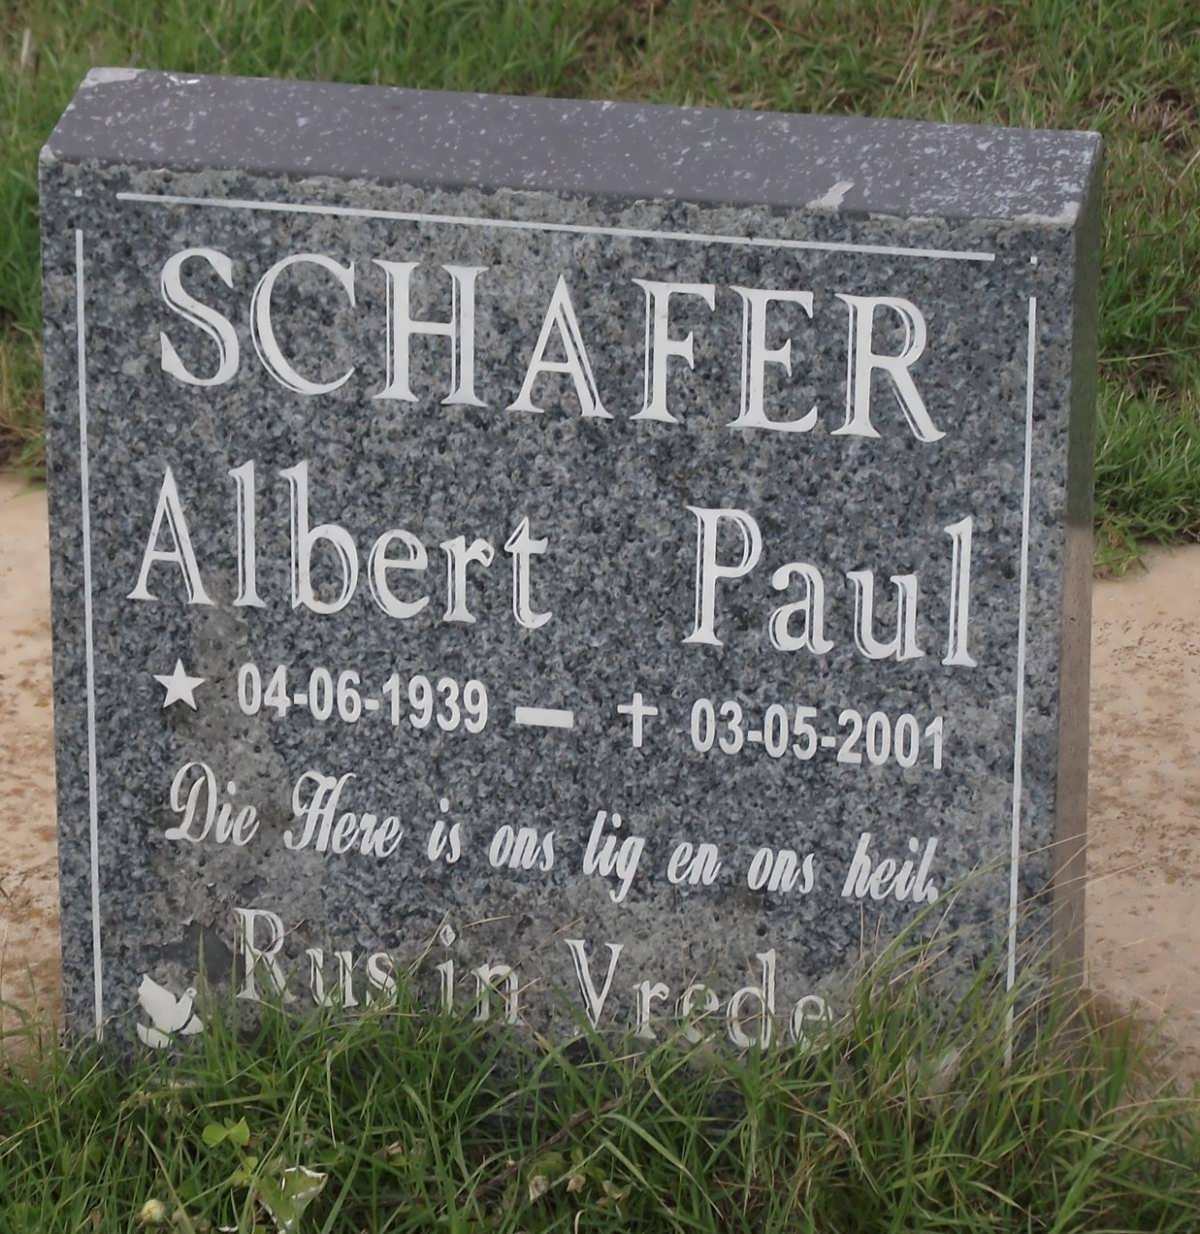 SCHAFER Albert Paul 1939-2001